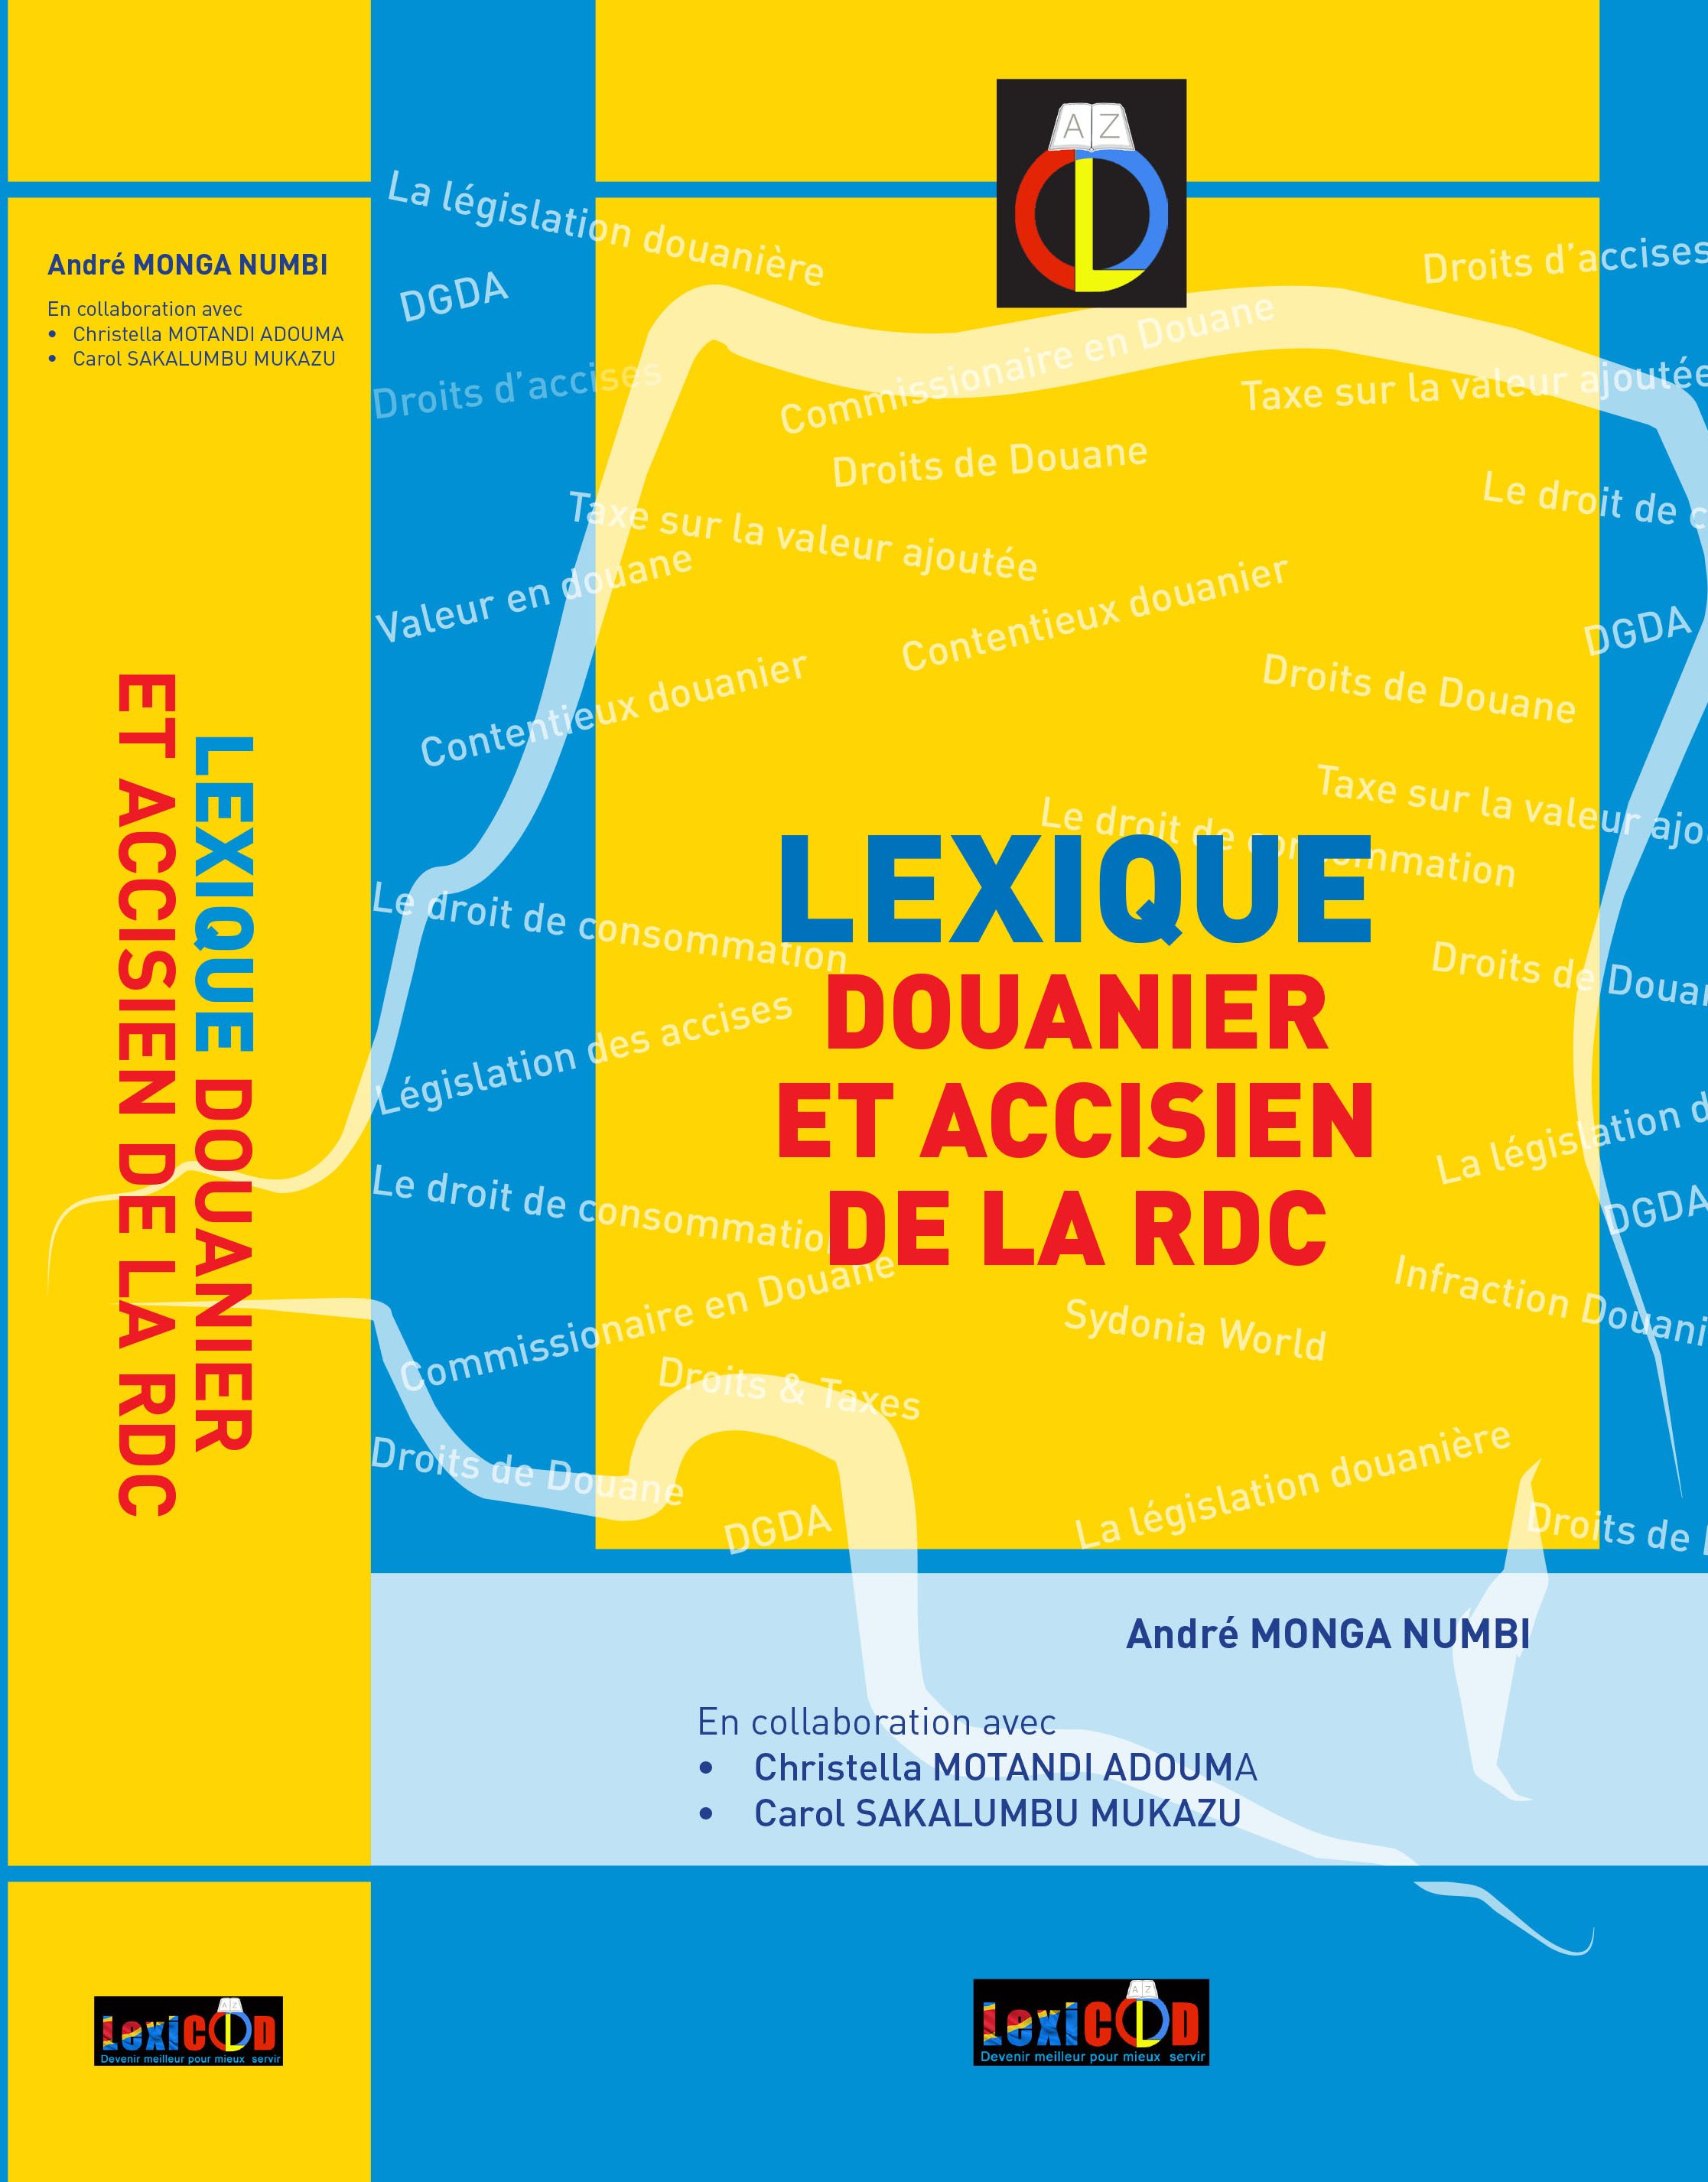 Le Lexique Douanier et Accisien de la RDC